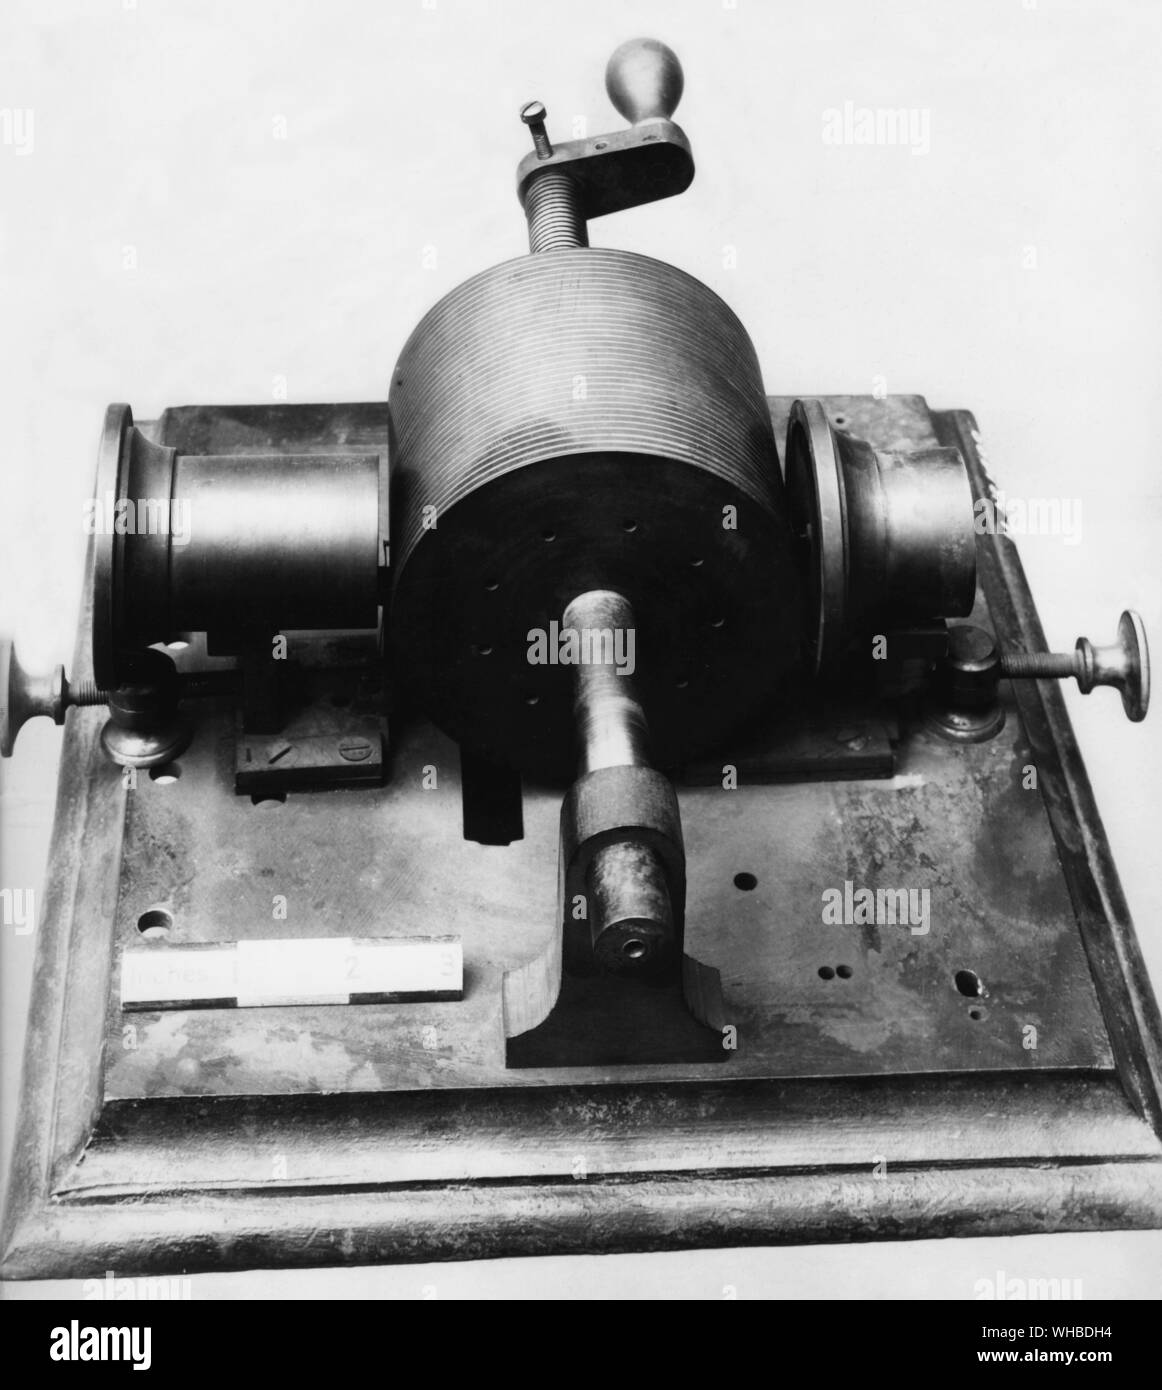 El fonógrafo de Edison fue desarrollado como resultado de la labor de Thomas Edison en otros dos inventos, el telégrafo y el teléfono. En 1877, Edison estaba trabajando en una máquina que transcribir mensajes telegráficos a través de hendiduras en cinta de papel, que más tarde podría enviarse a través del telégrafo repetidamente. Este desarrollo llevó a especular que Edison un mensaje telefónico también podrían grabarse en una manera similar. Él experimentó con un diafragma que tenía un punto de relieve y se celebró en contra de rápido movimiento de papel de parafina. Las vibraciones que habla las sangrías en el papel. Edison posterior Foto de stock